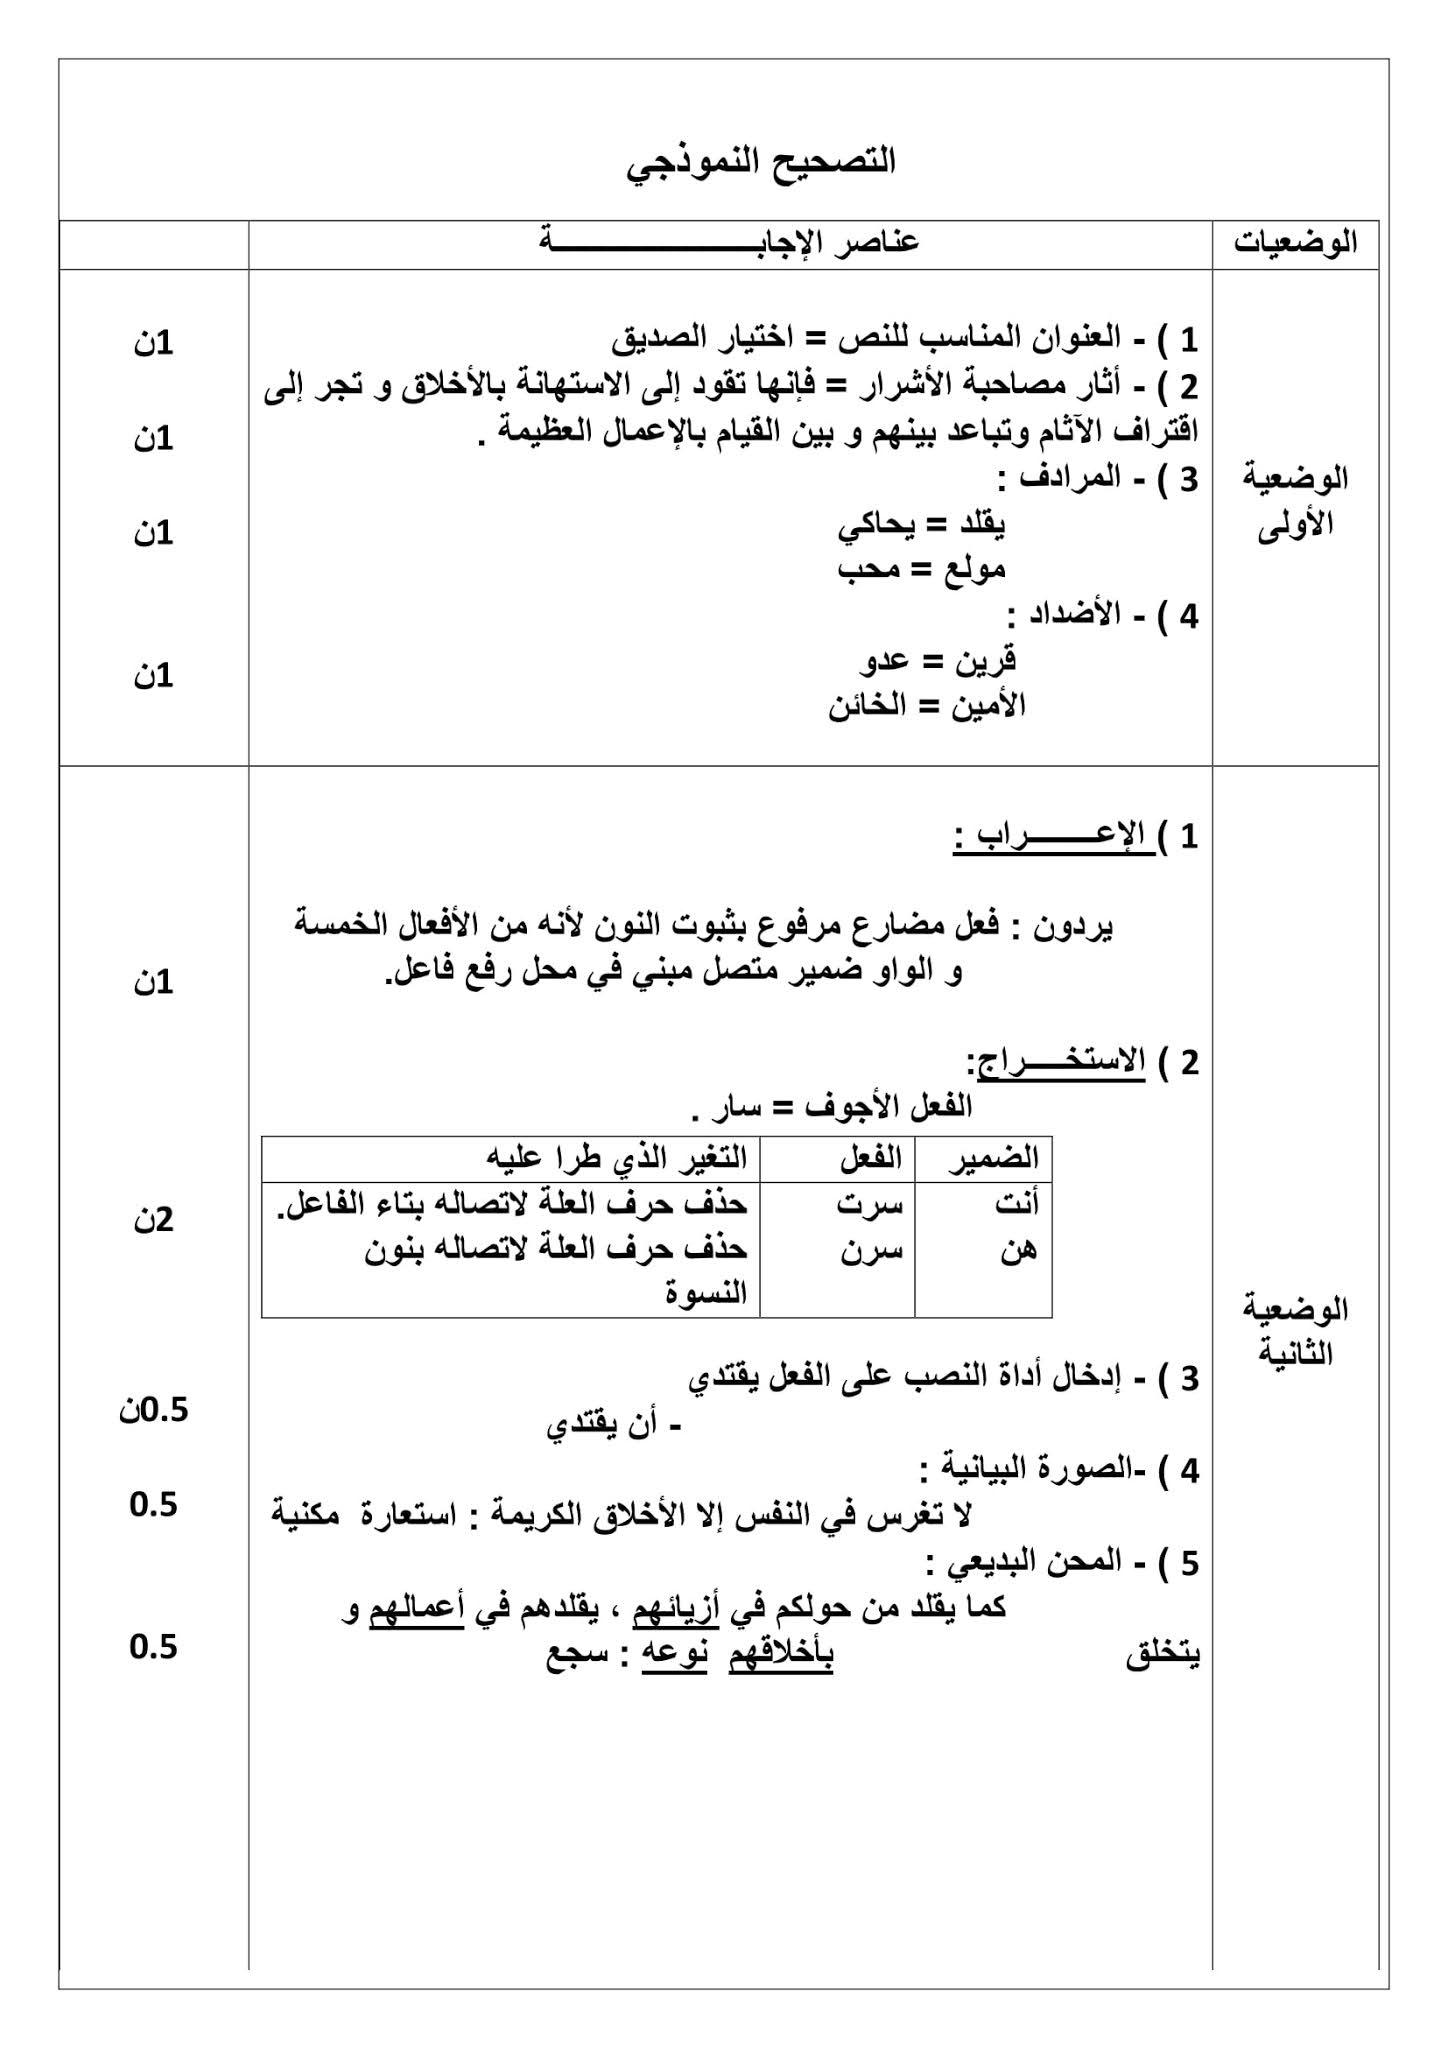 فرض اللغة العربية الفصل الثاني للسنة الثانية متوسط - الجيل الثاني نموذج 6